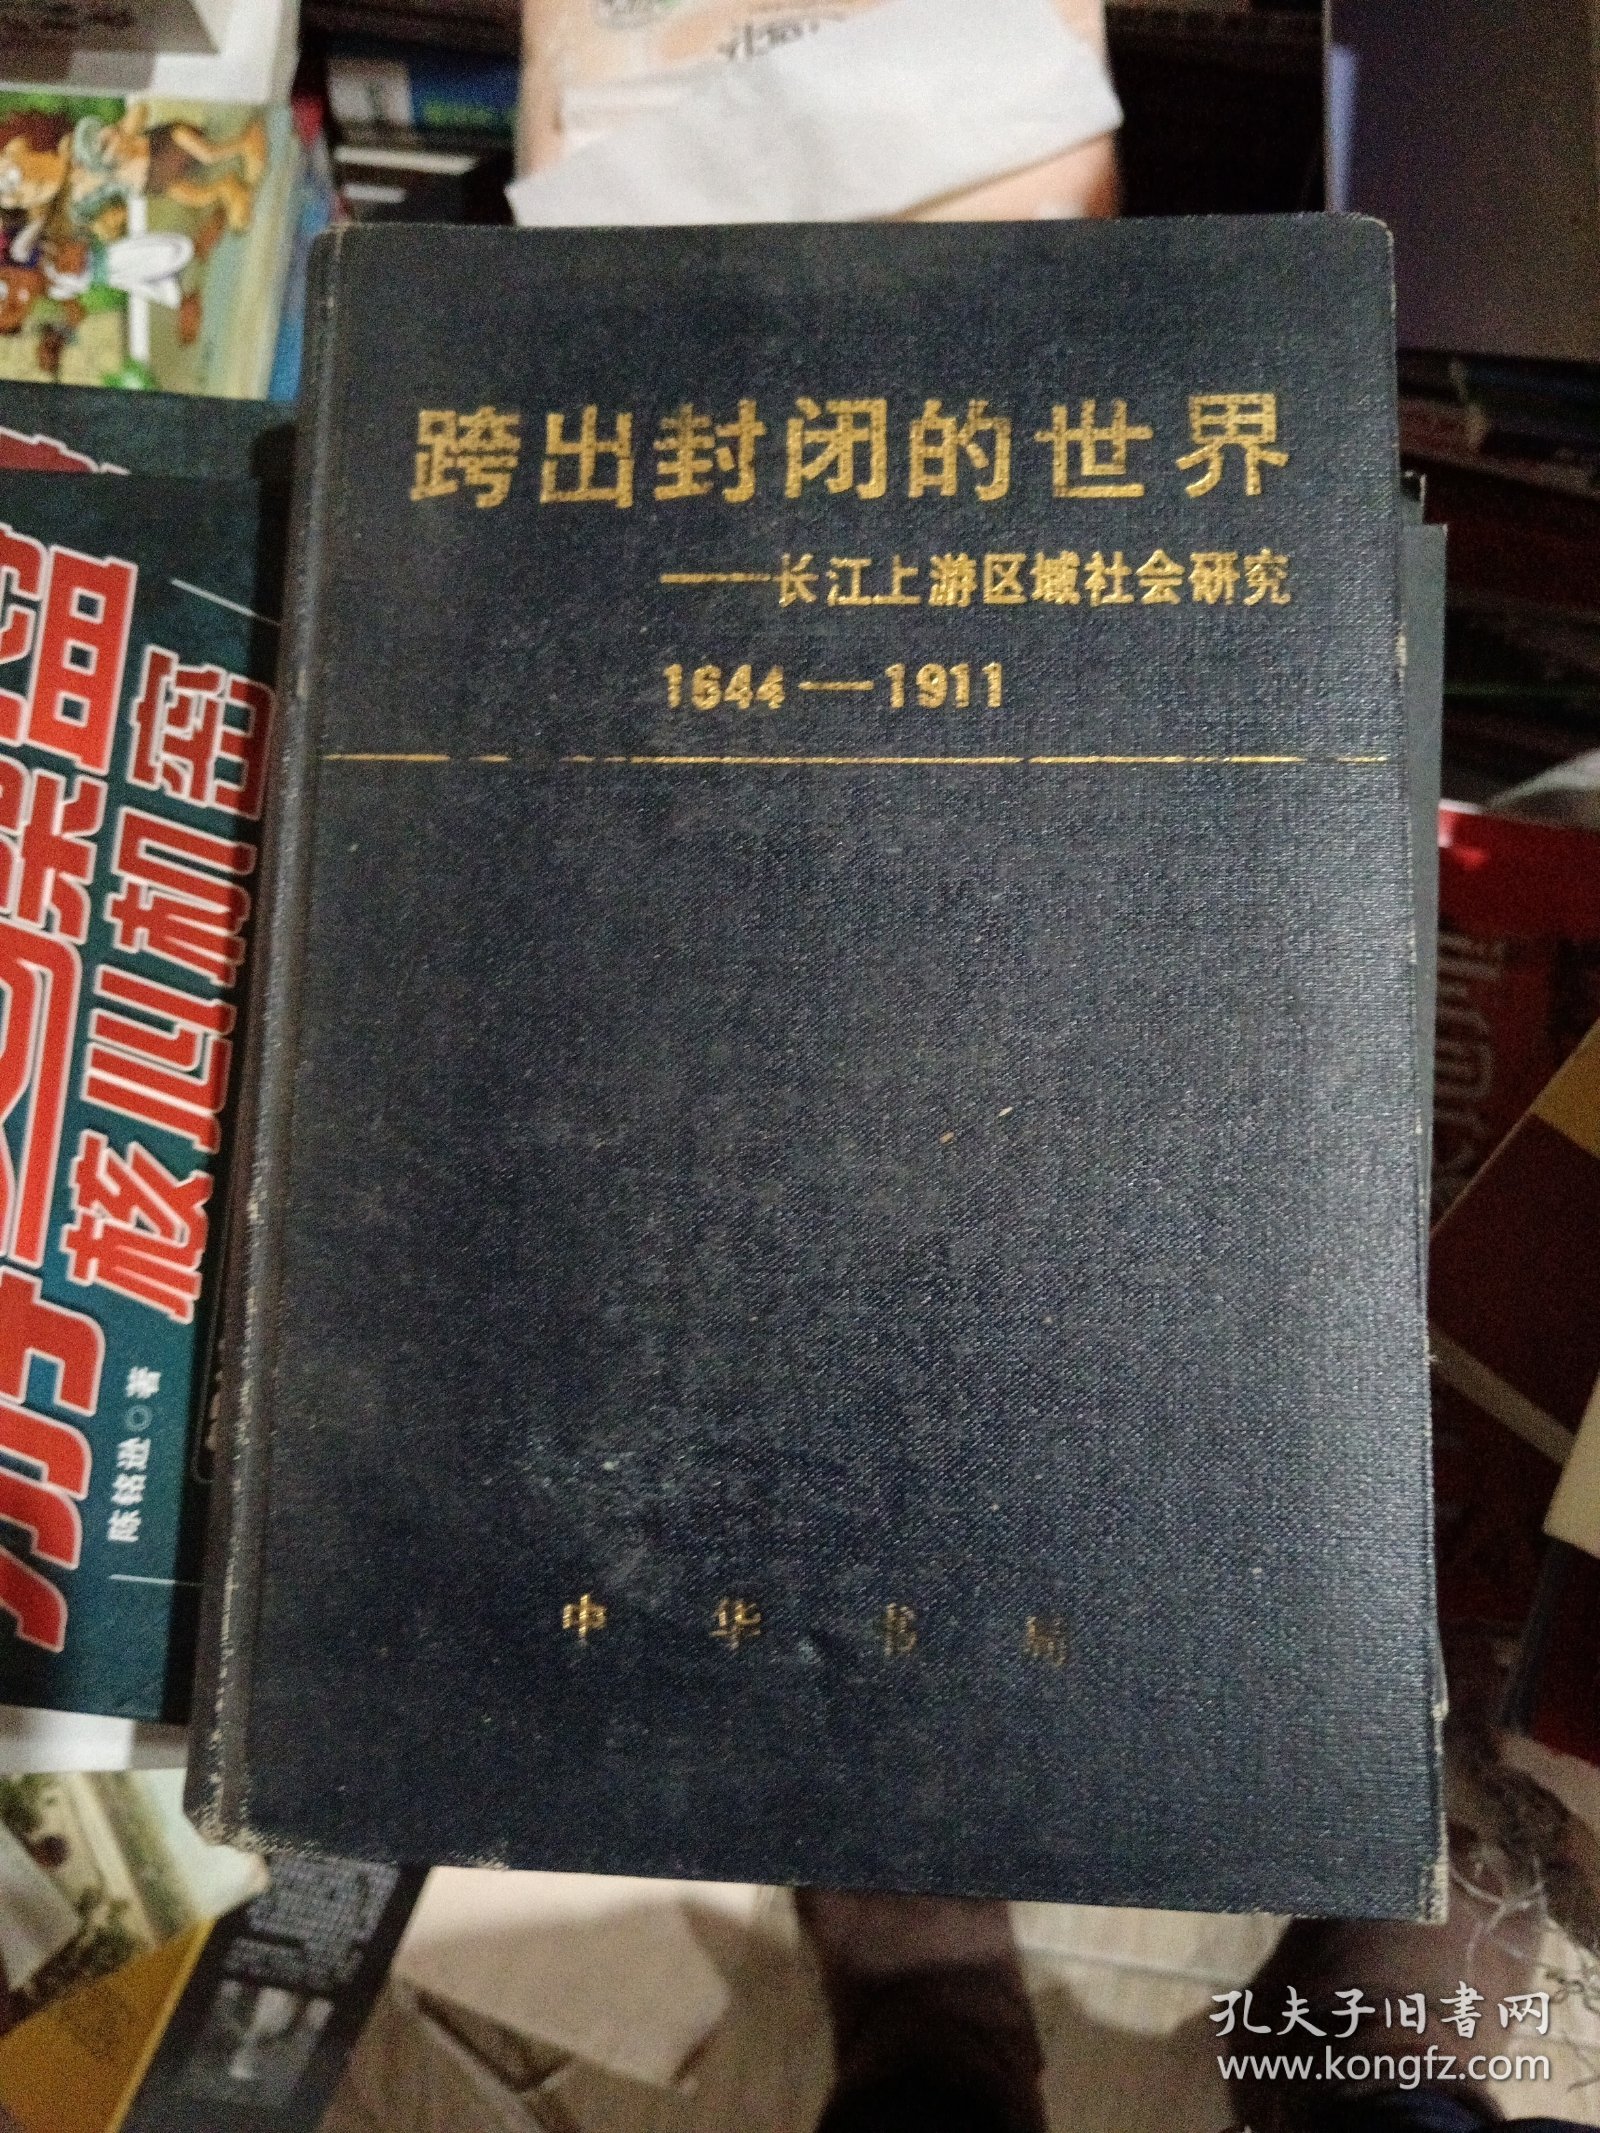 跨出封闭的世界:长江上游区域社会研究:1644-1911